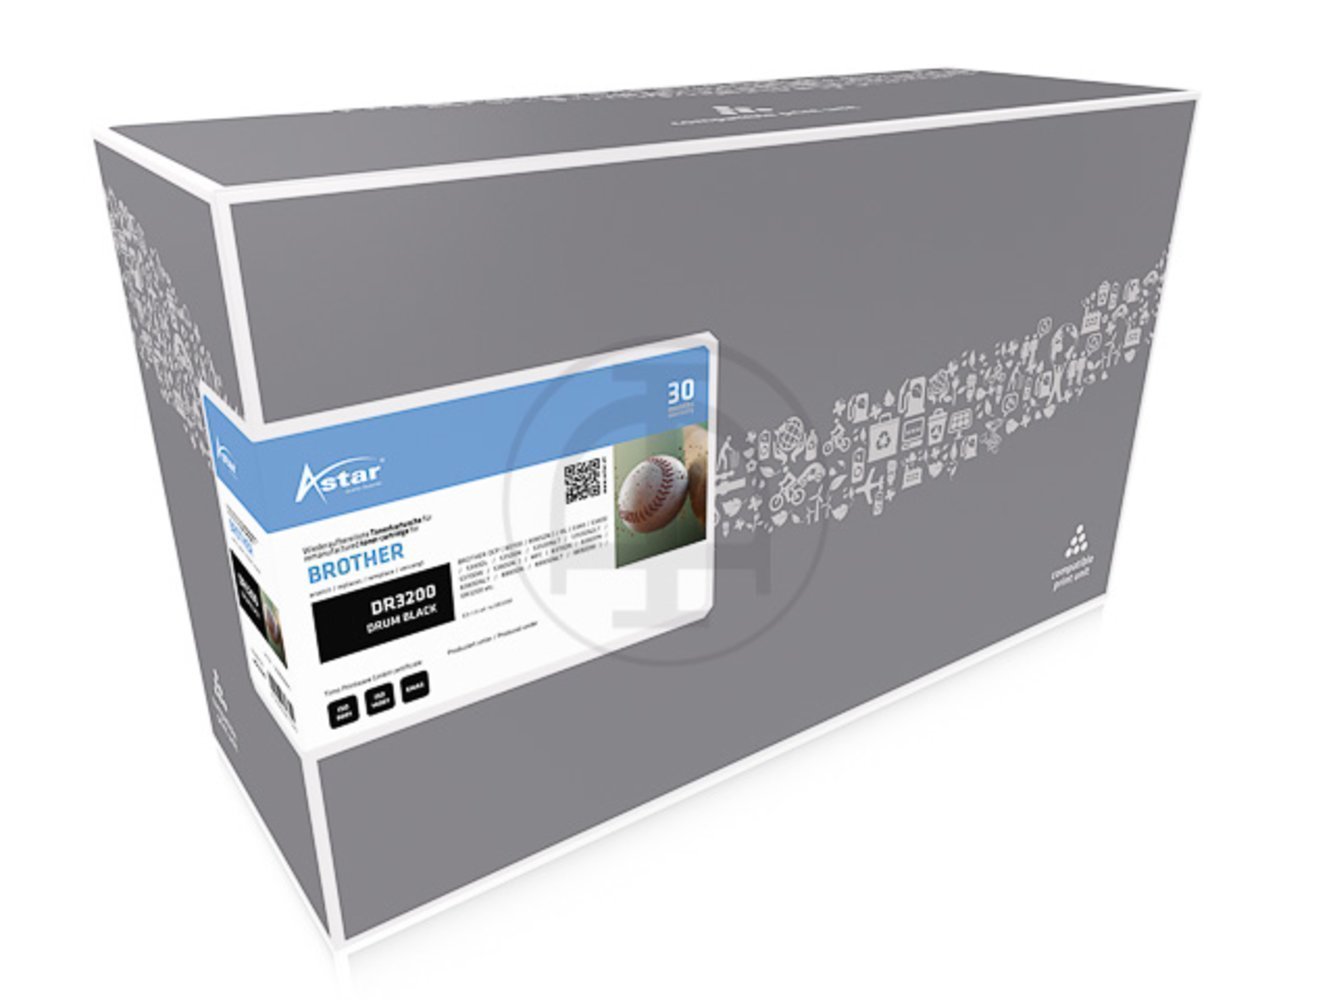 Produkttitel: Astar DR3200 All-in-One Drucker mit einer Druckleistung von 25.000 Seiten